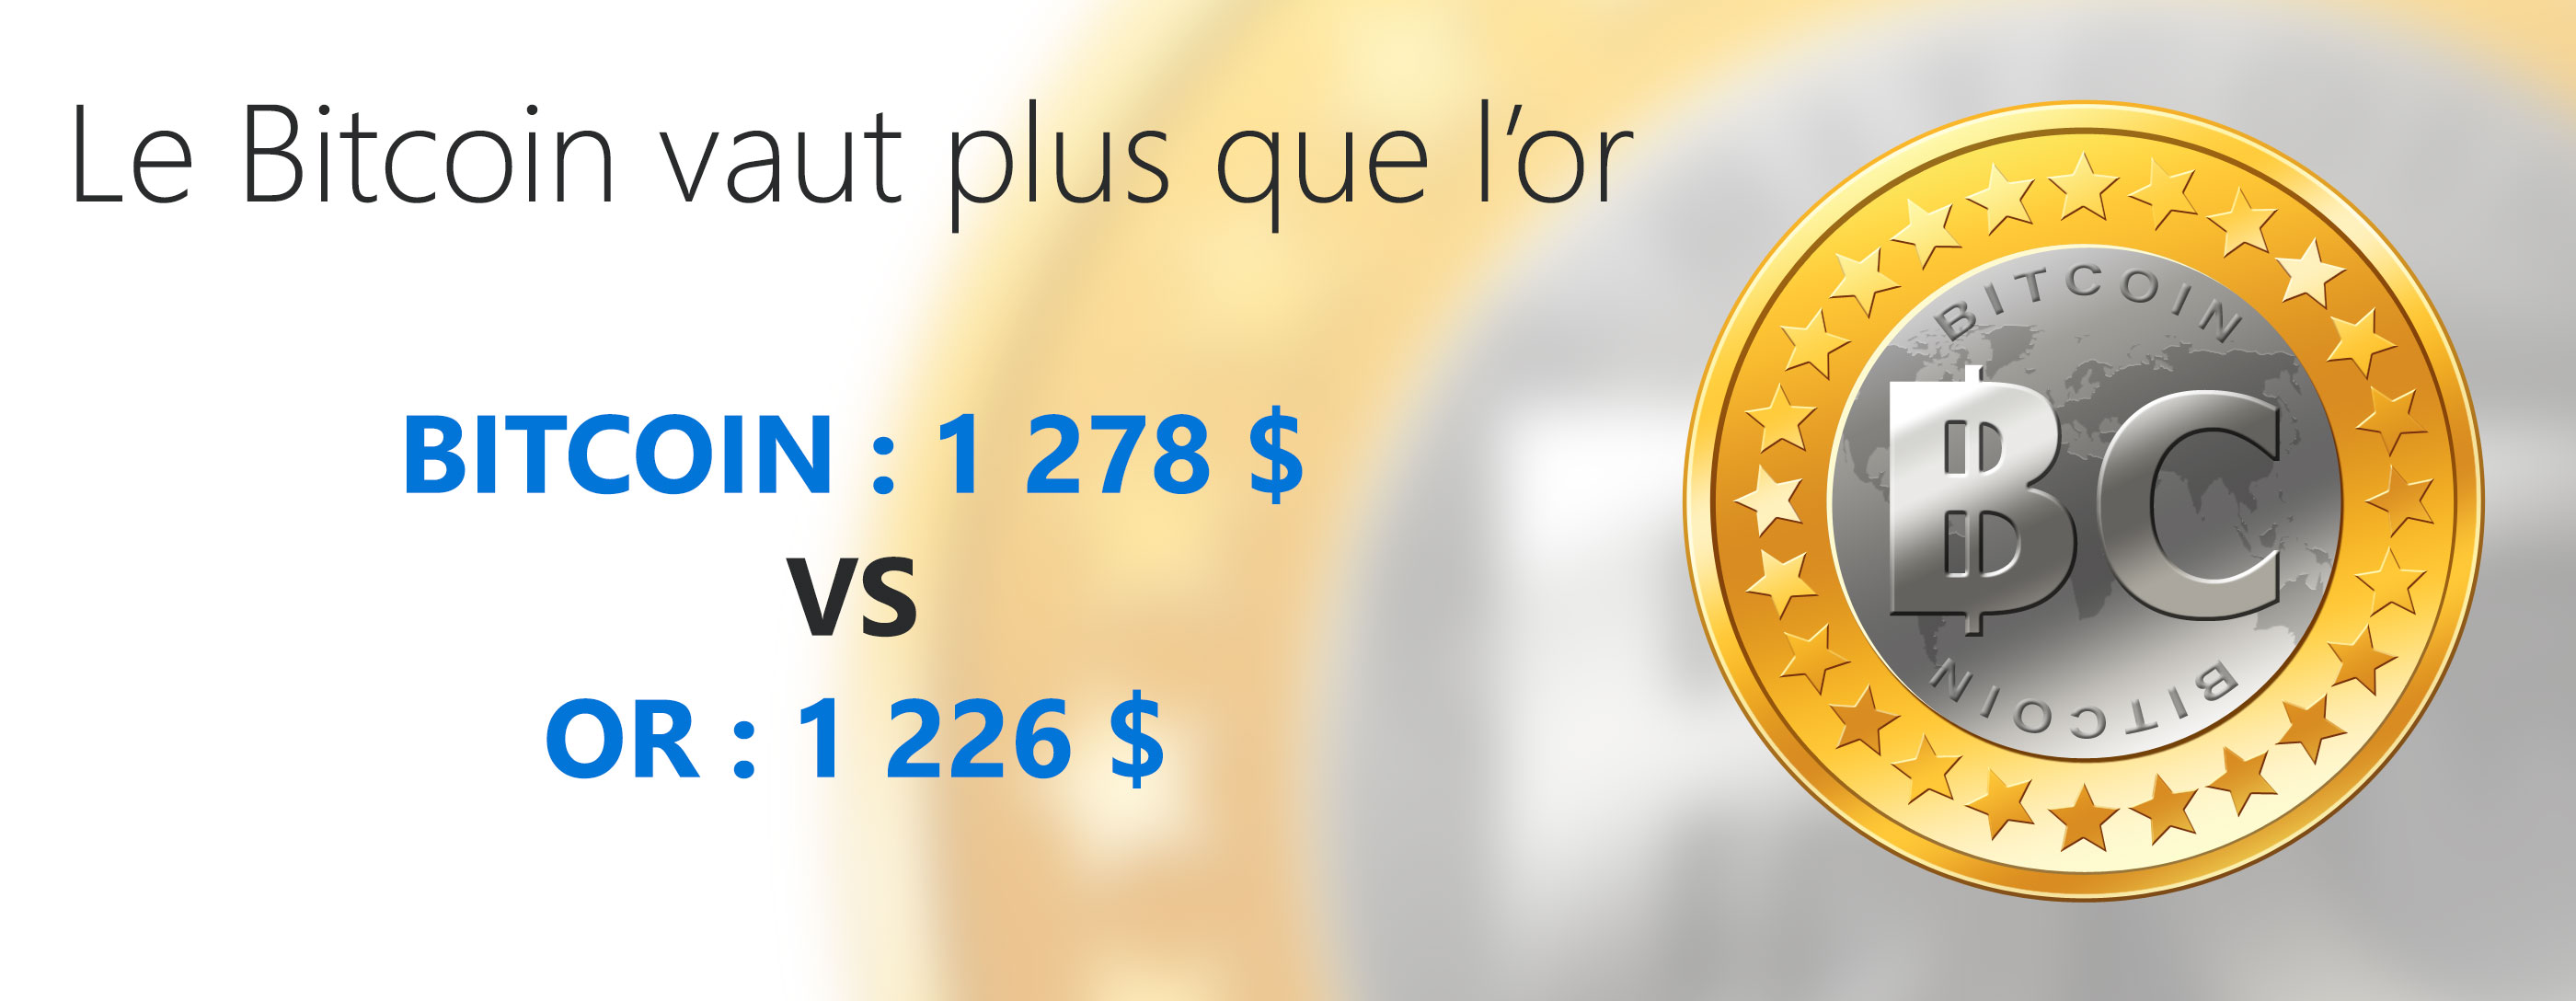 Le Bitcoin vaut plus que l'or